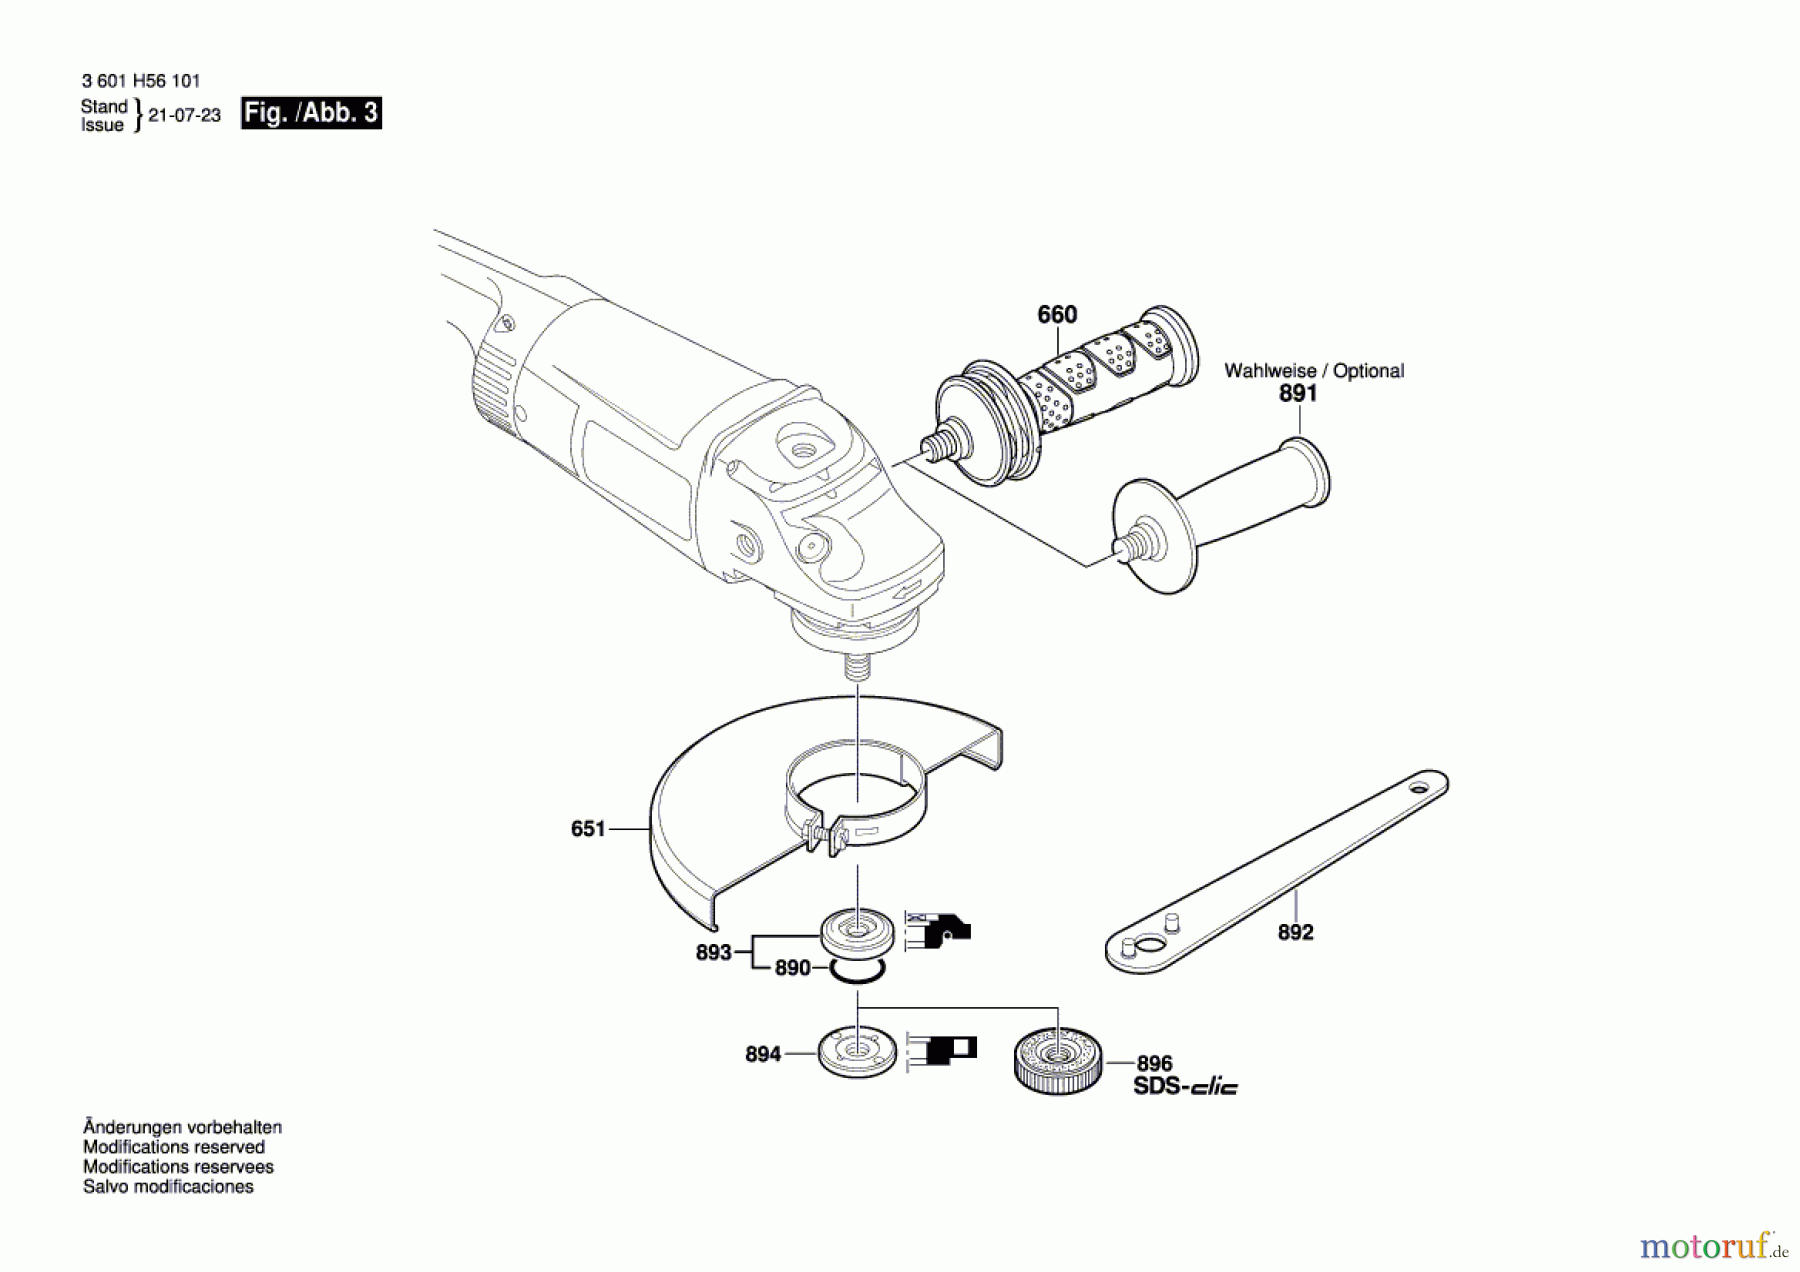  Bosch Werkzeug Winkelschleifer GWS 26-230 JH Seite 3